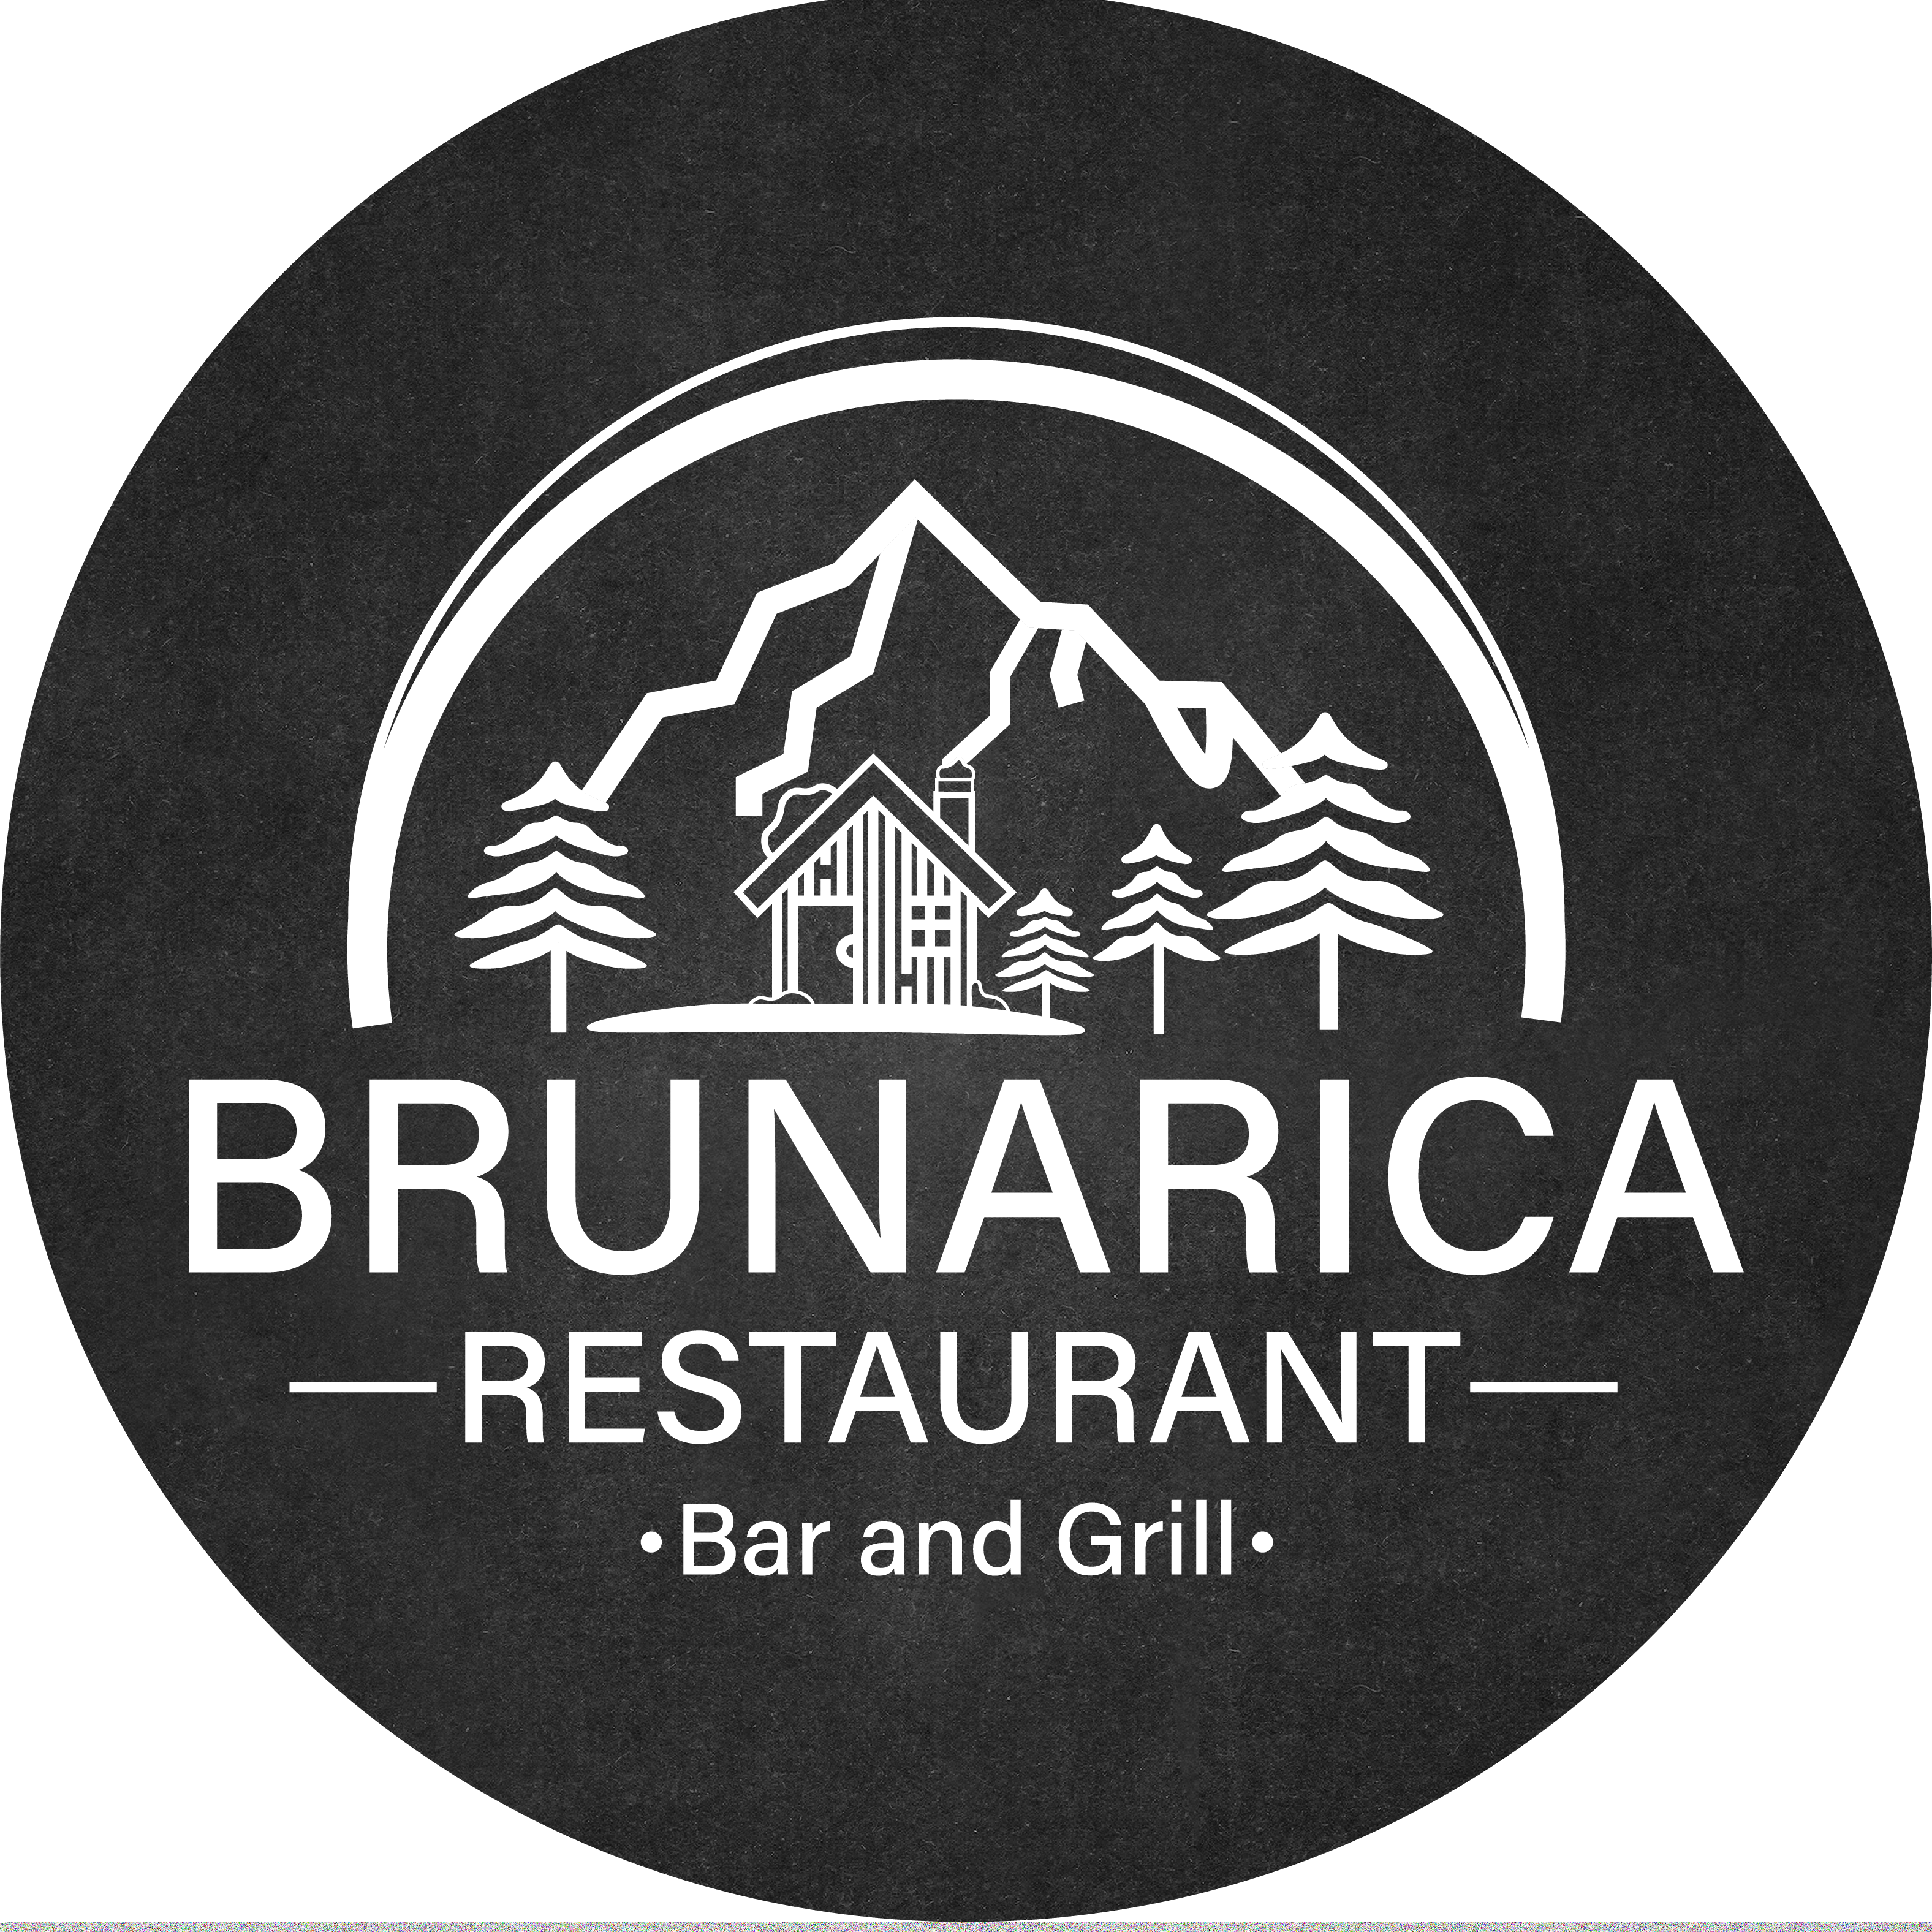 Brunarica Restaurant